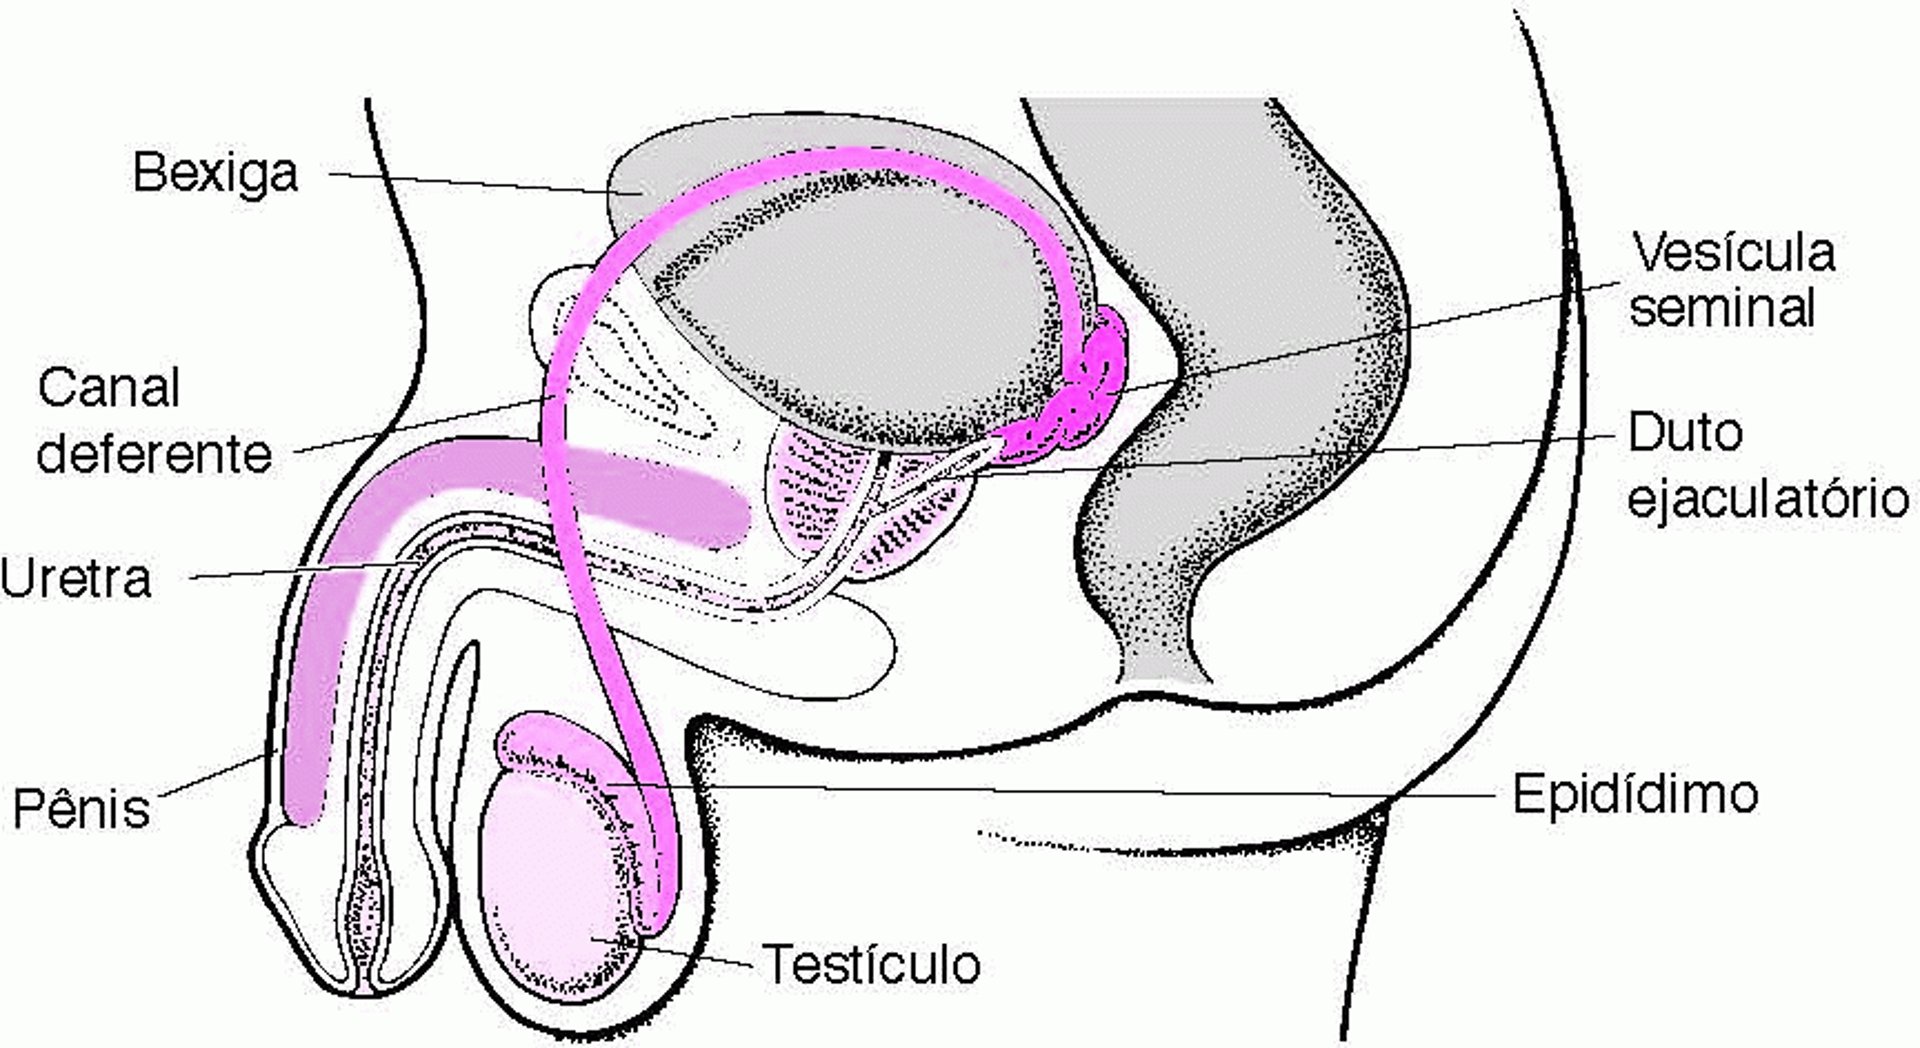 Localização dos órgãos reprodutores masculinos